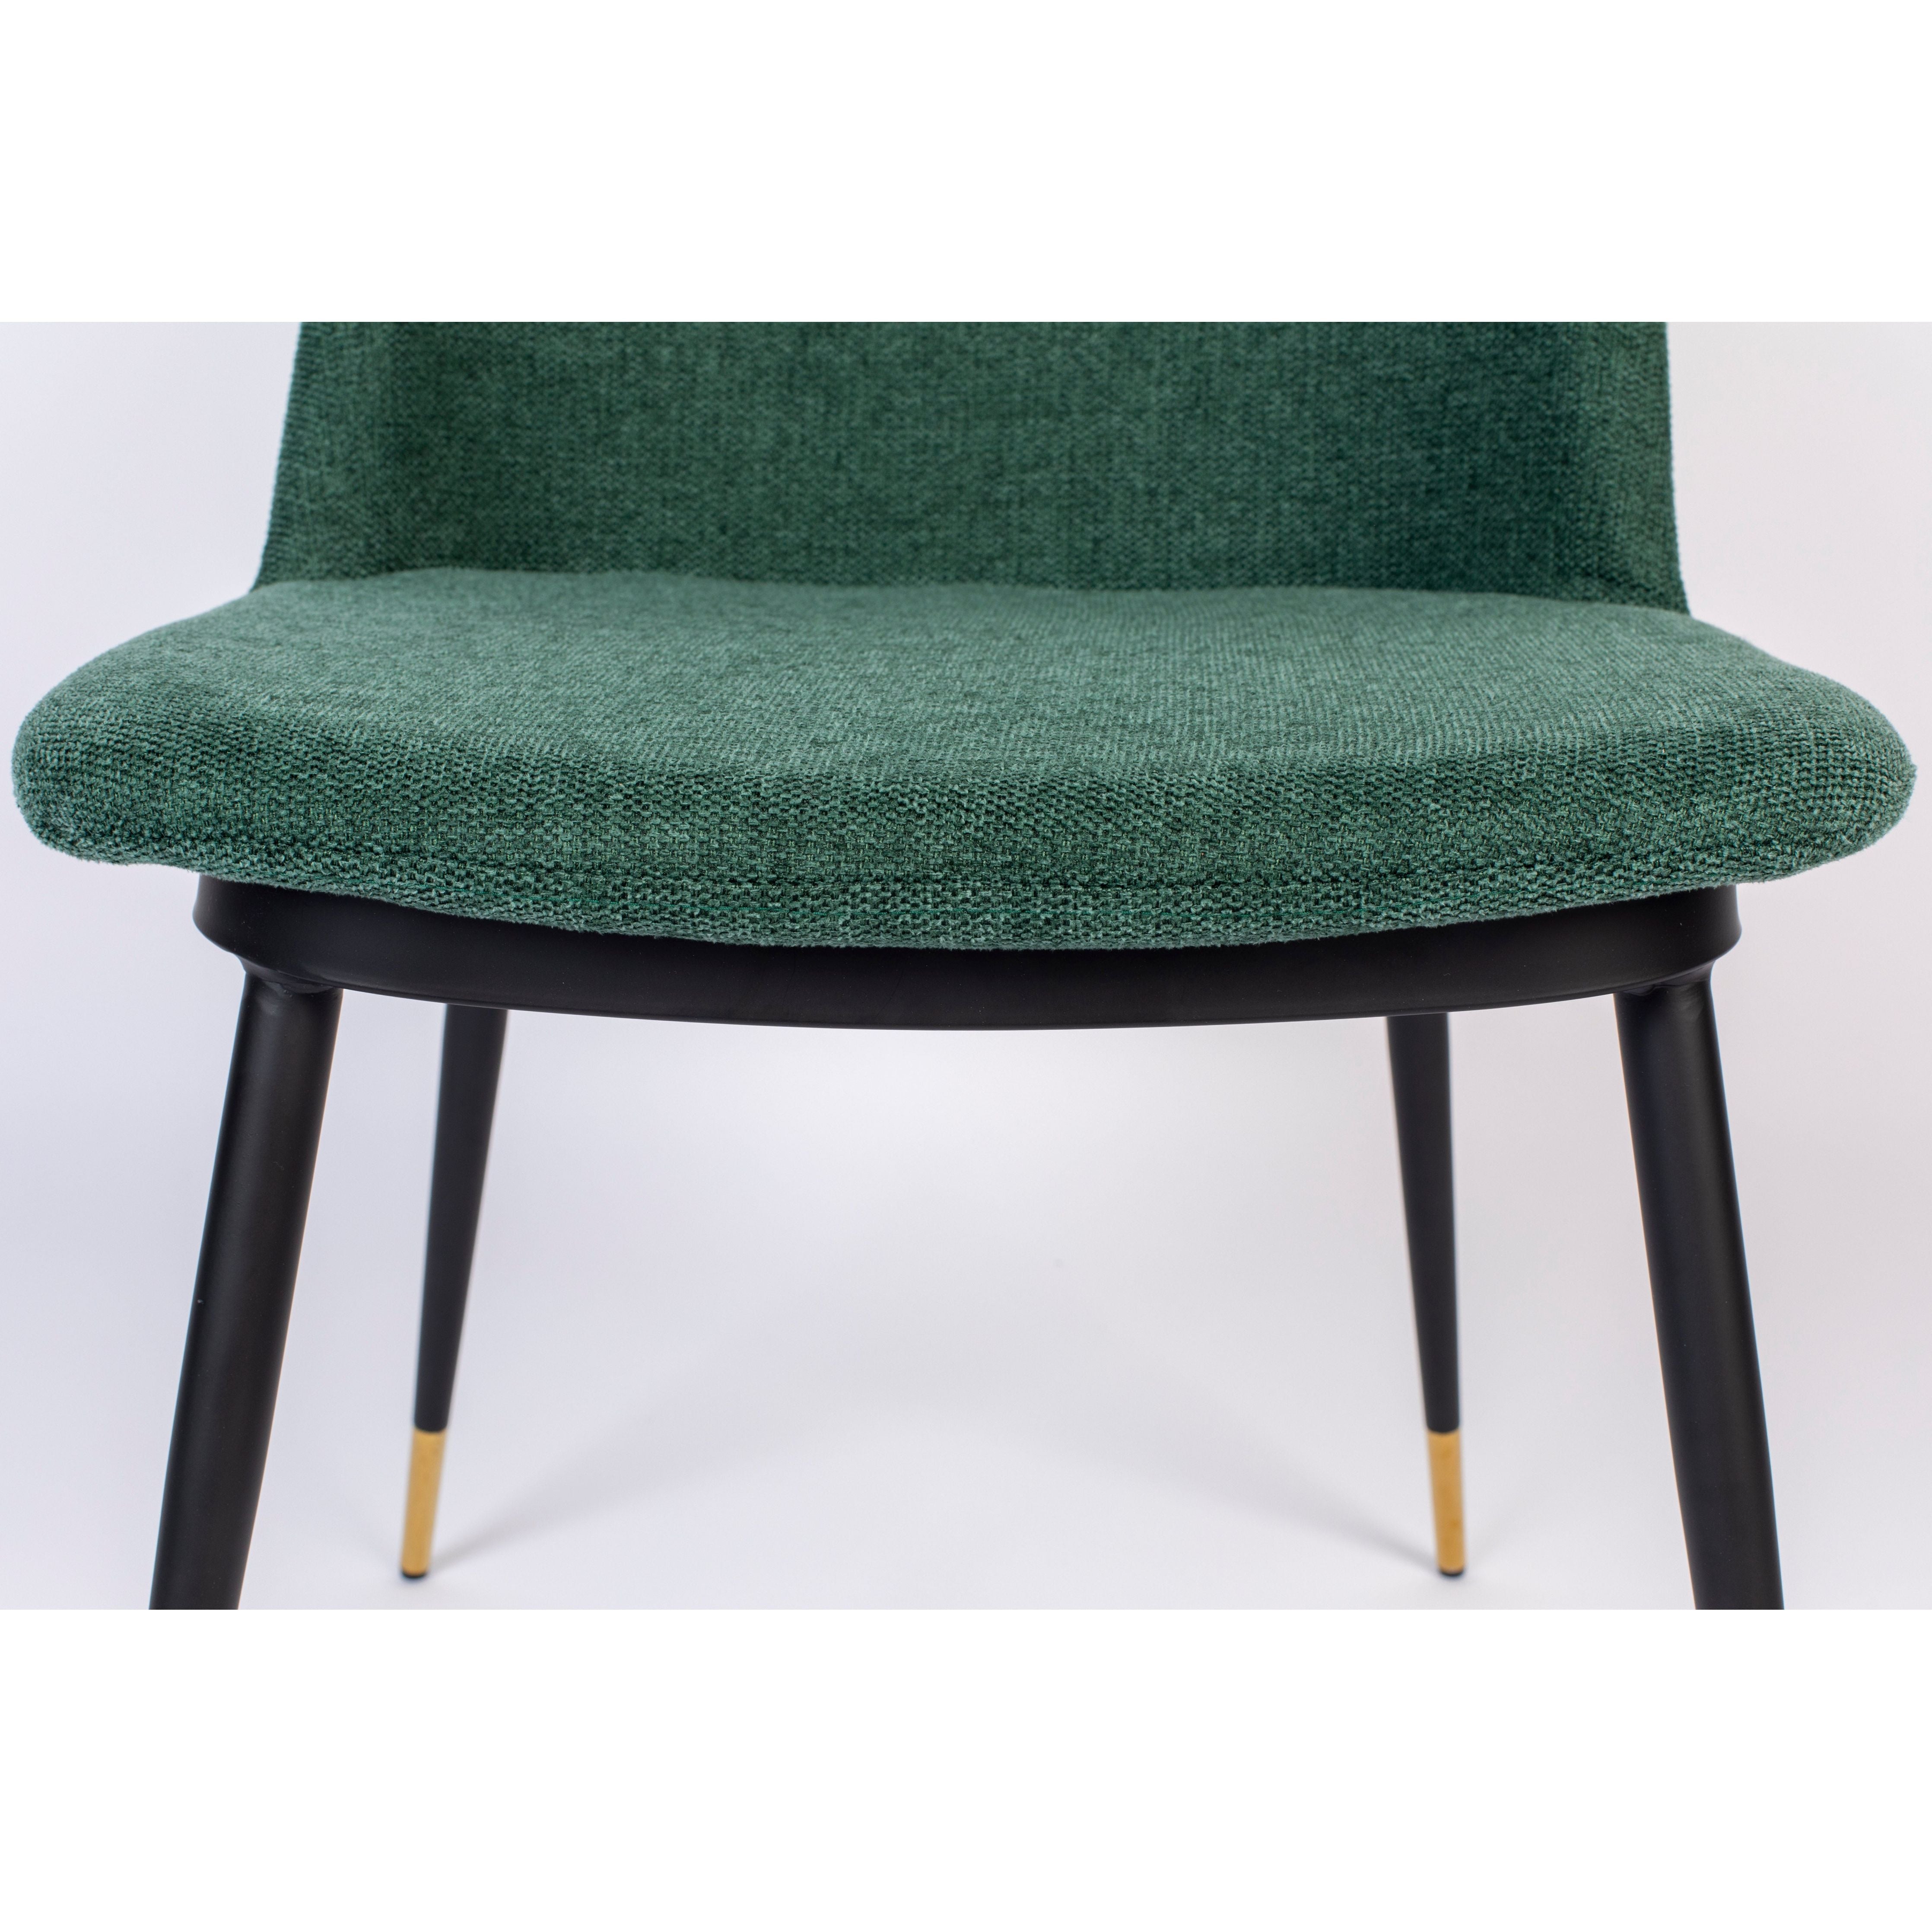 Chair lionel dark green fr | 2 pieces